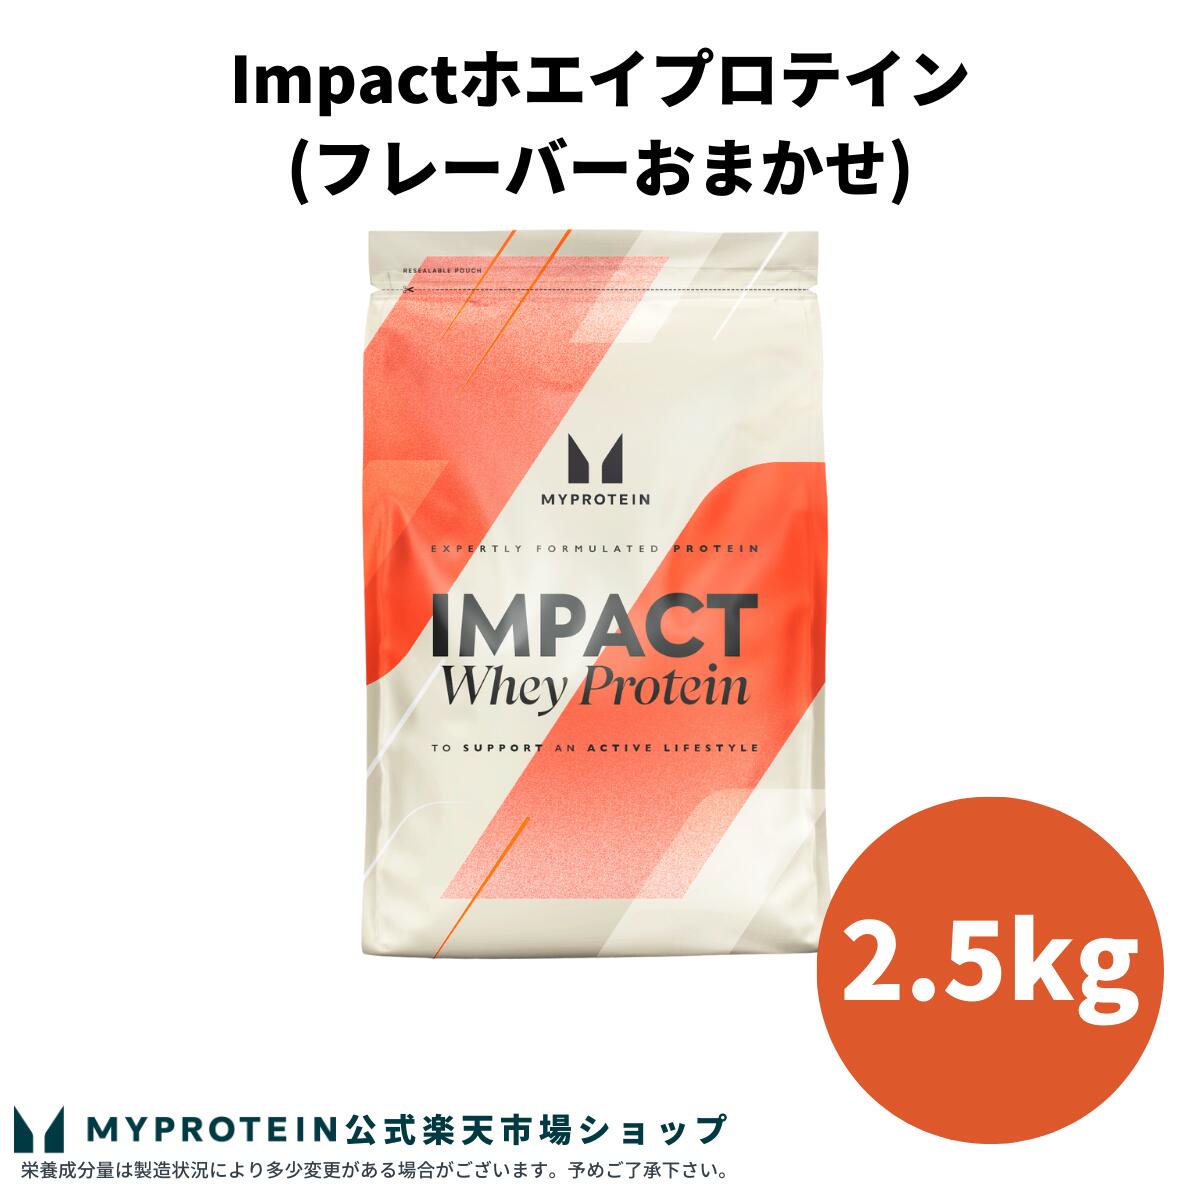 マイプロテイン Impact ホエイプロテイン (フレーバーおまかせ) 2.5kg 